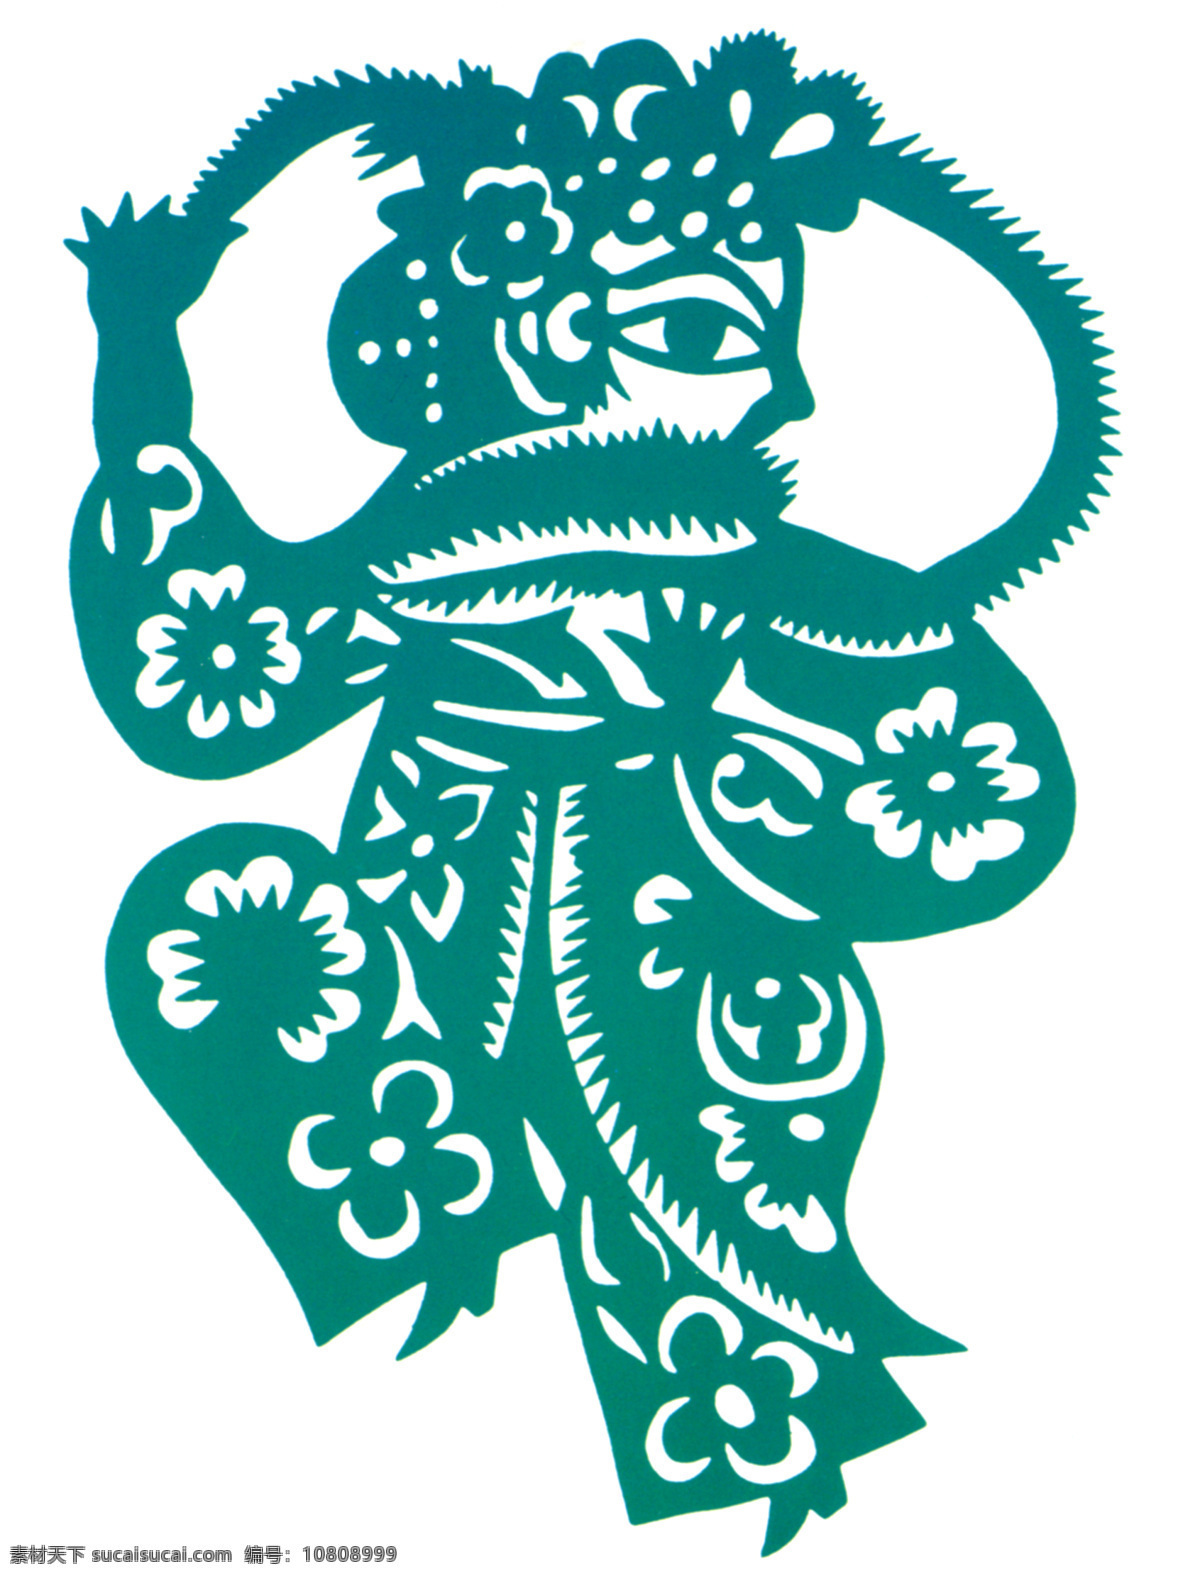 穆桂英 中国传统图案 图案 中国设计 剪纸 中国风 传统图案 花纹 传统 古典 经典 中国图案 年画 纹样图案 吉祥图案 高清素材 中国的传统 传统文化 文化艺术